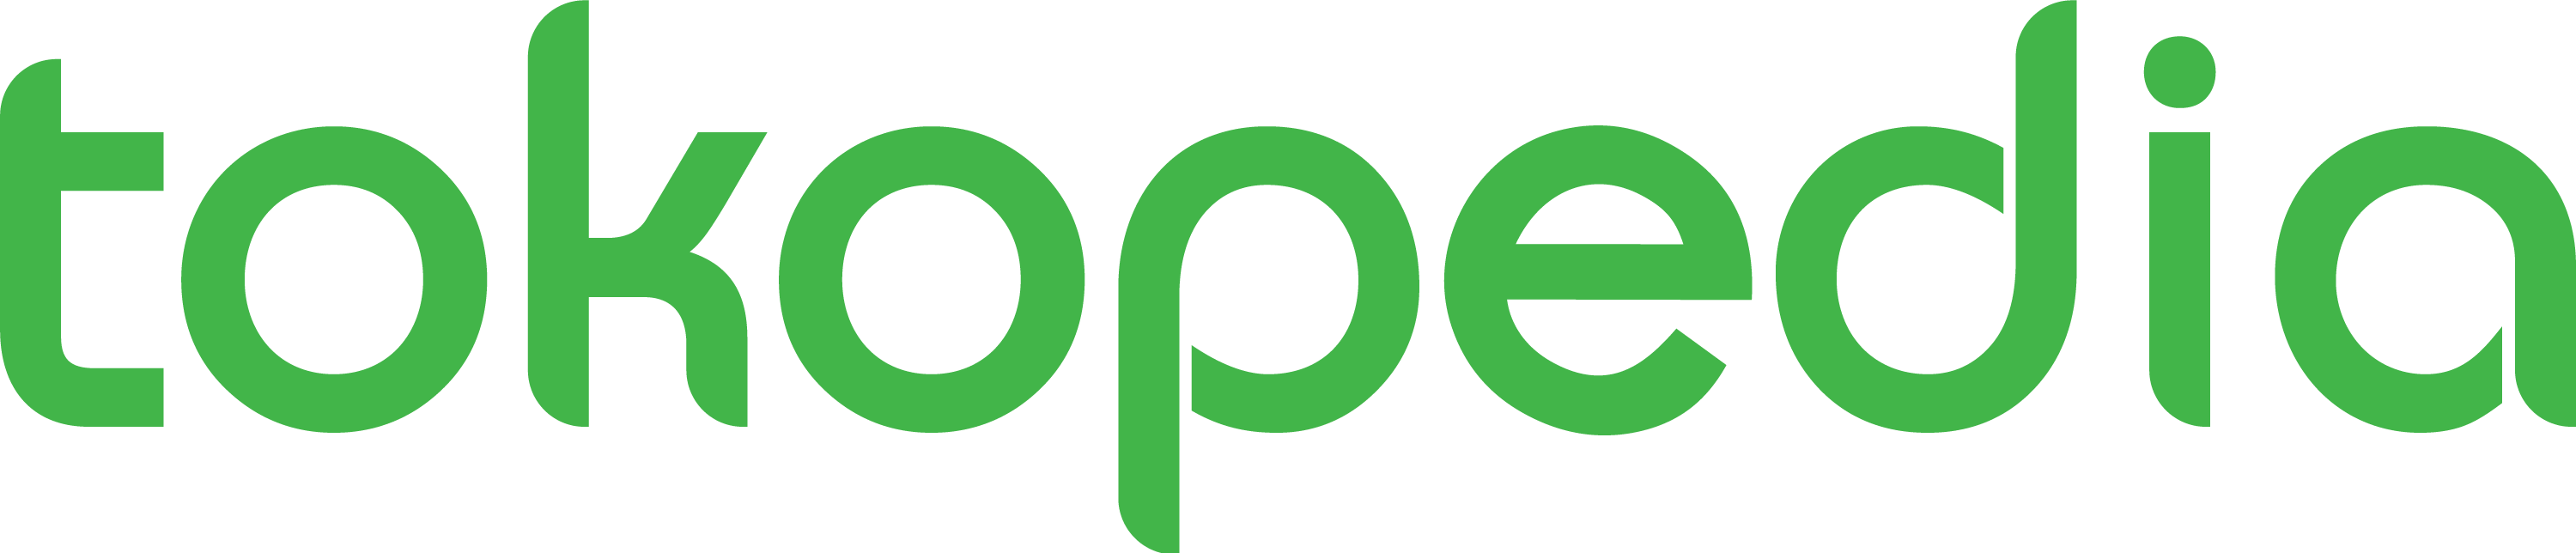 Tokopedia Logo PNG title=